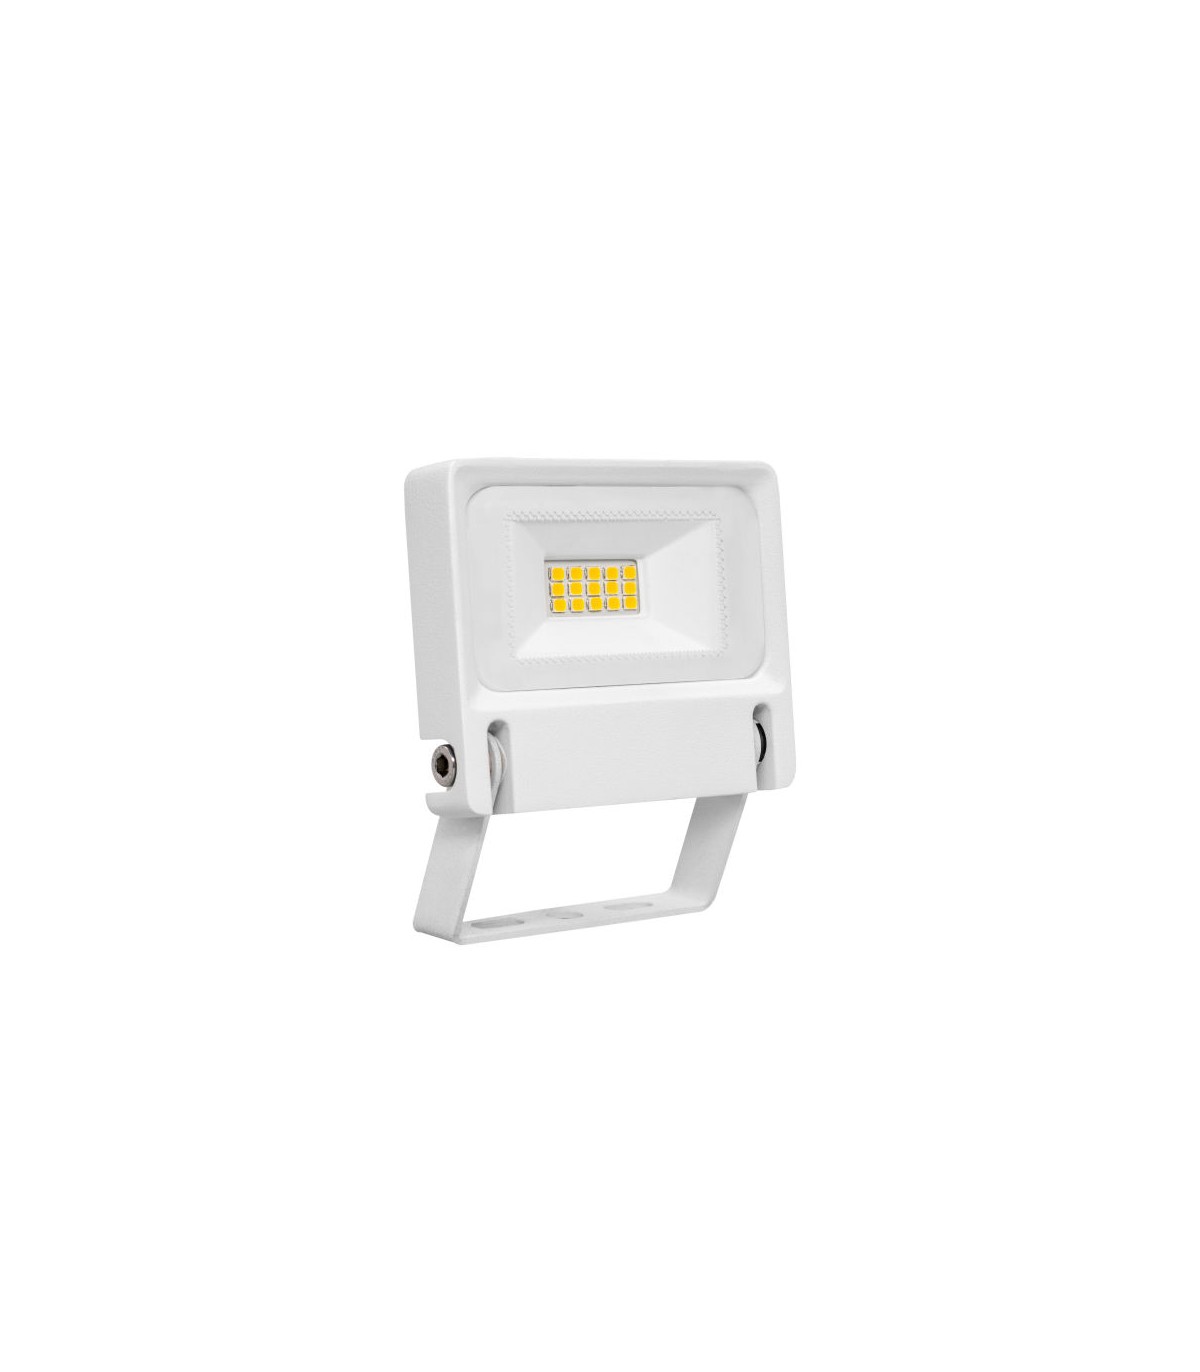 ARIC 51270, Projecteur extérieur blanc IP65 LED 10W Blanc froid